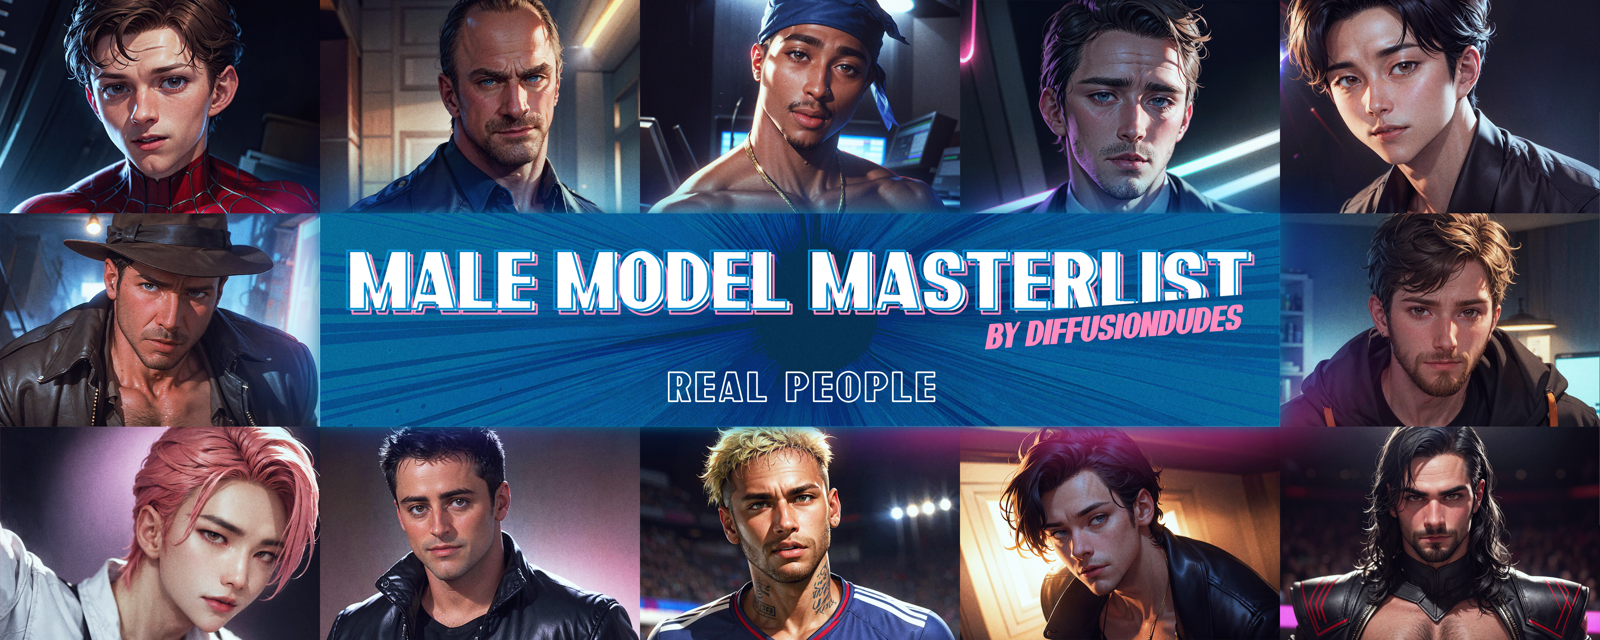 Male Model Masterlist - Real People